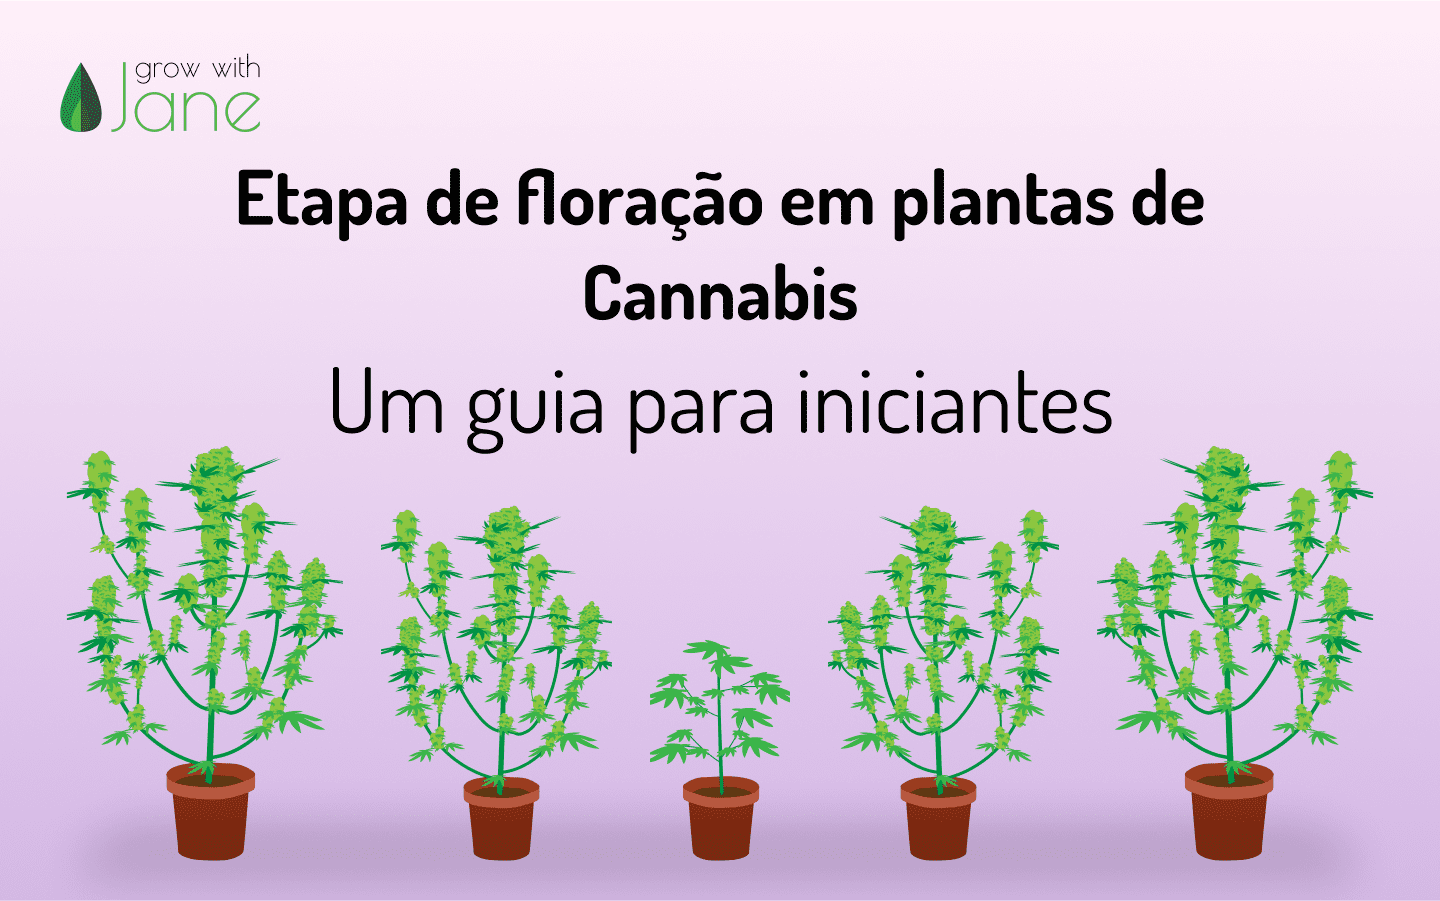 Etapa de floração em plantas de Cannabis: um guia para iniciantes